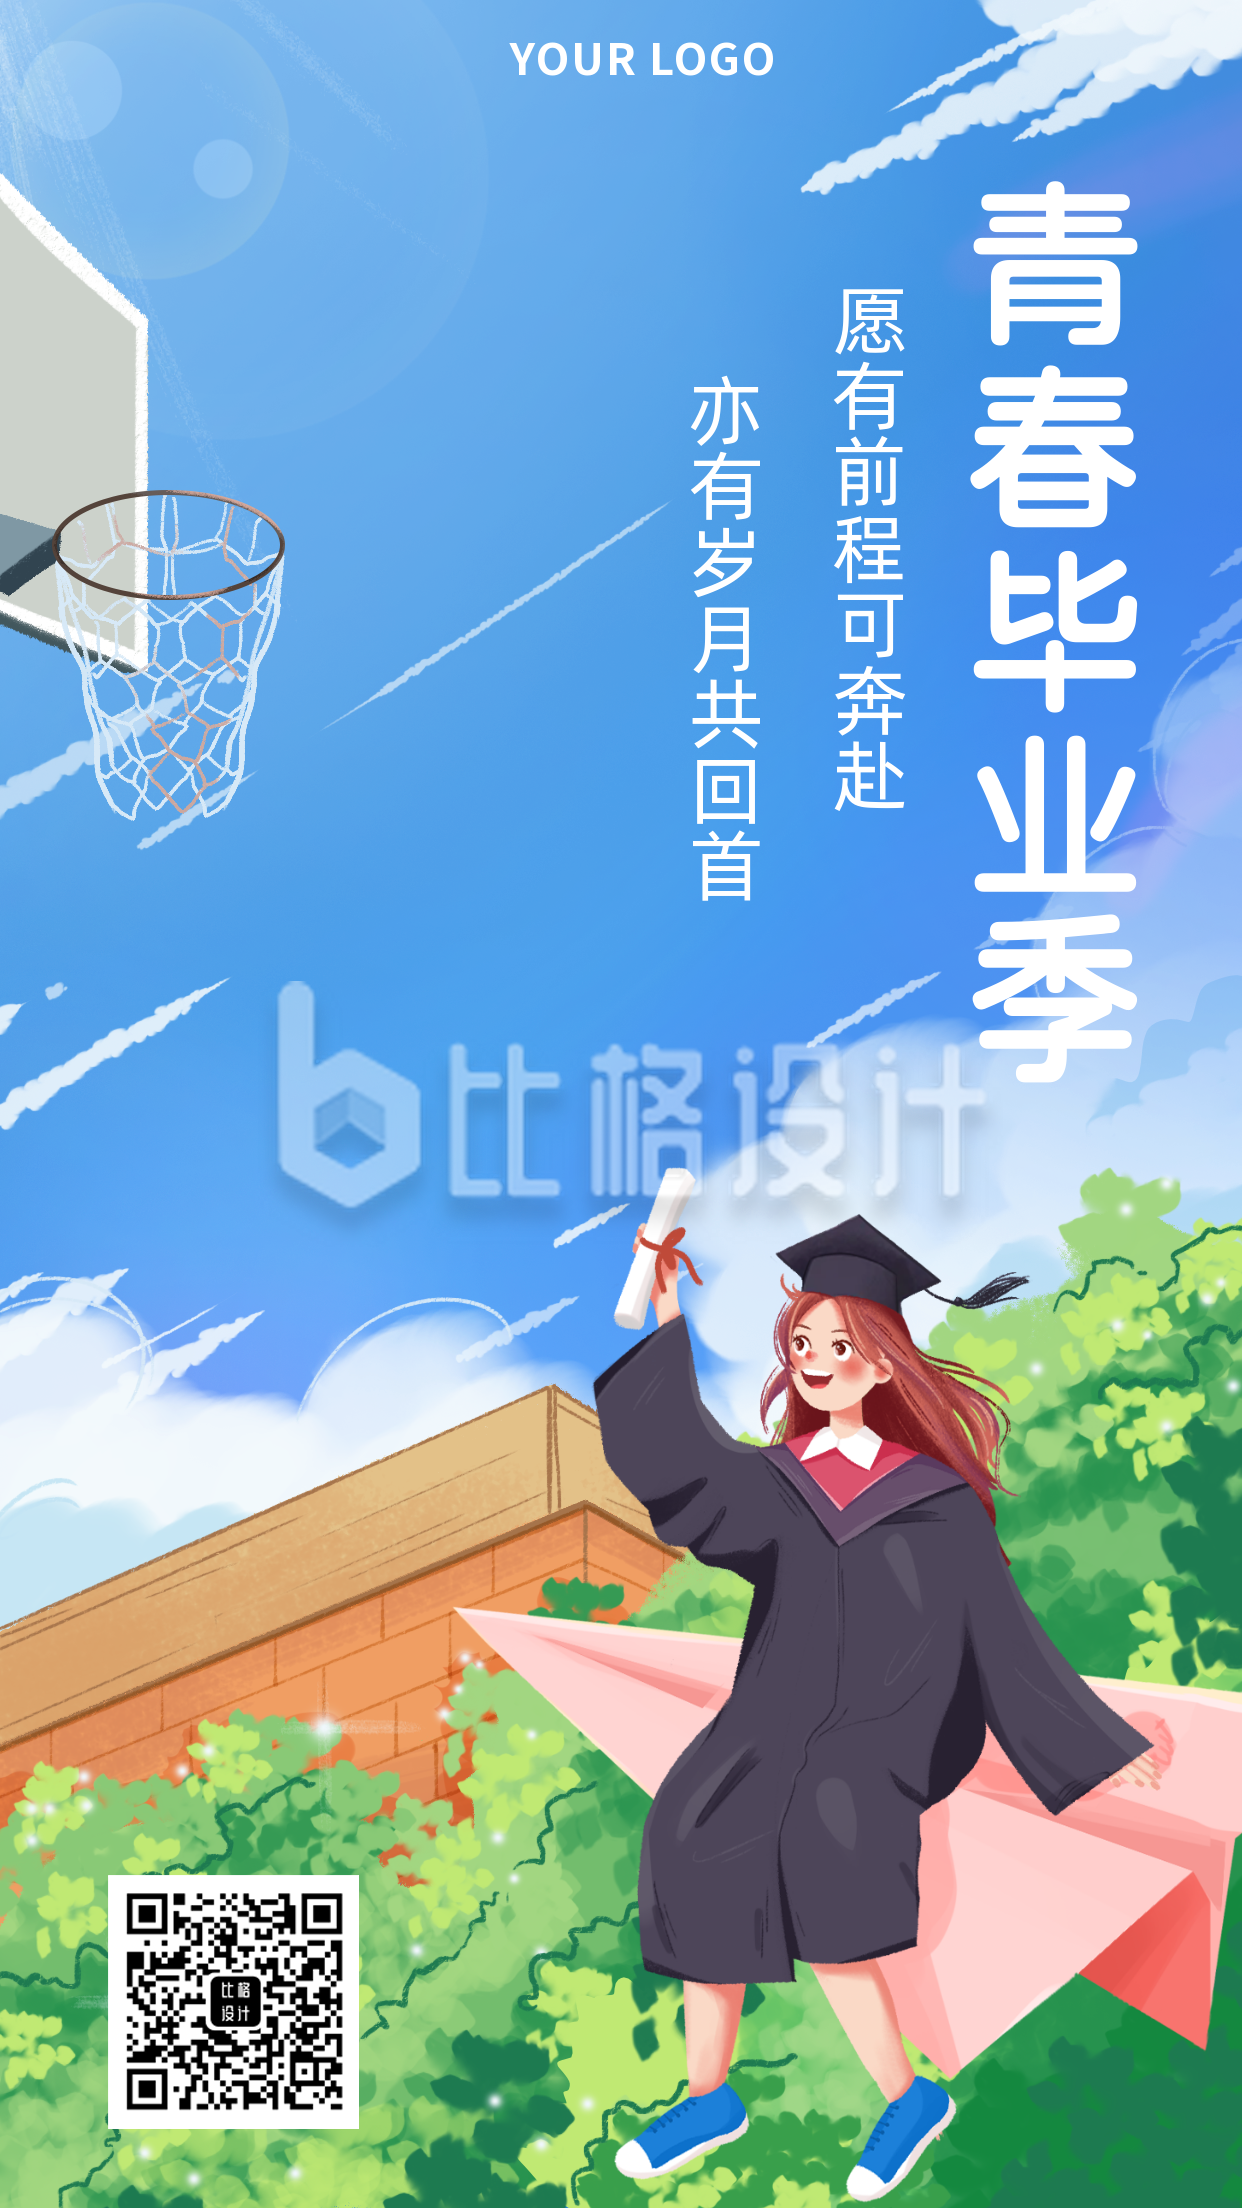 毕业季青春校园文案宣传推广手机海报